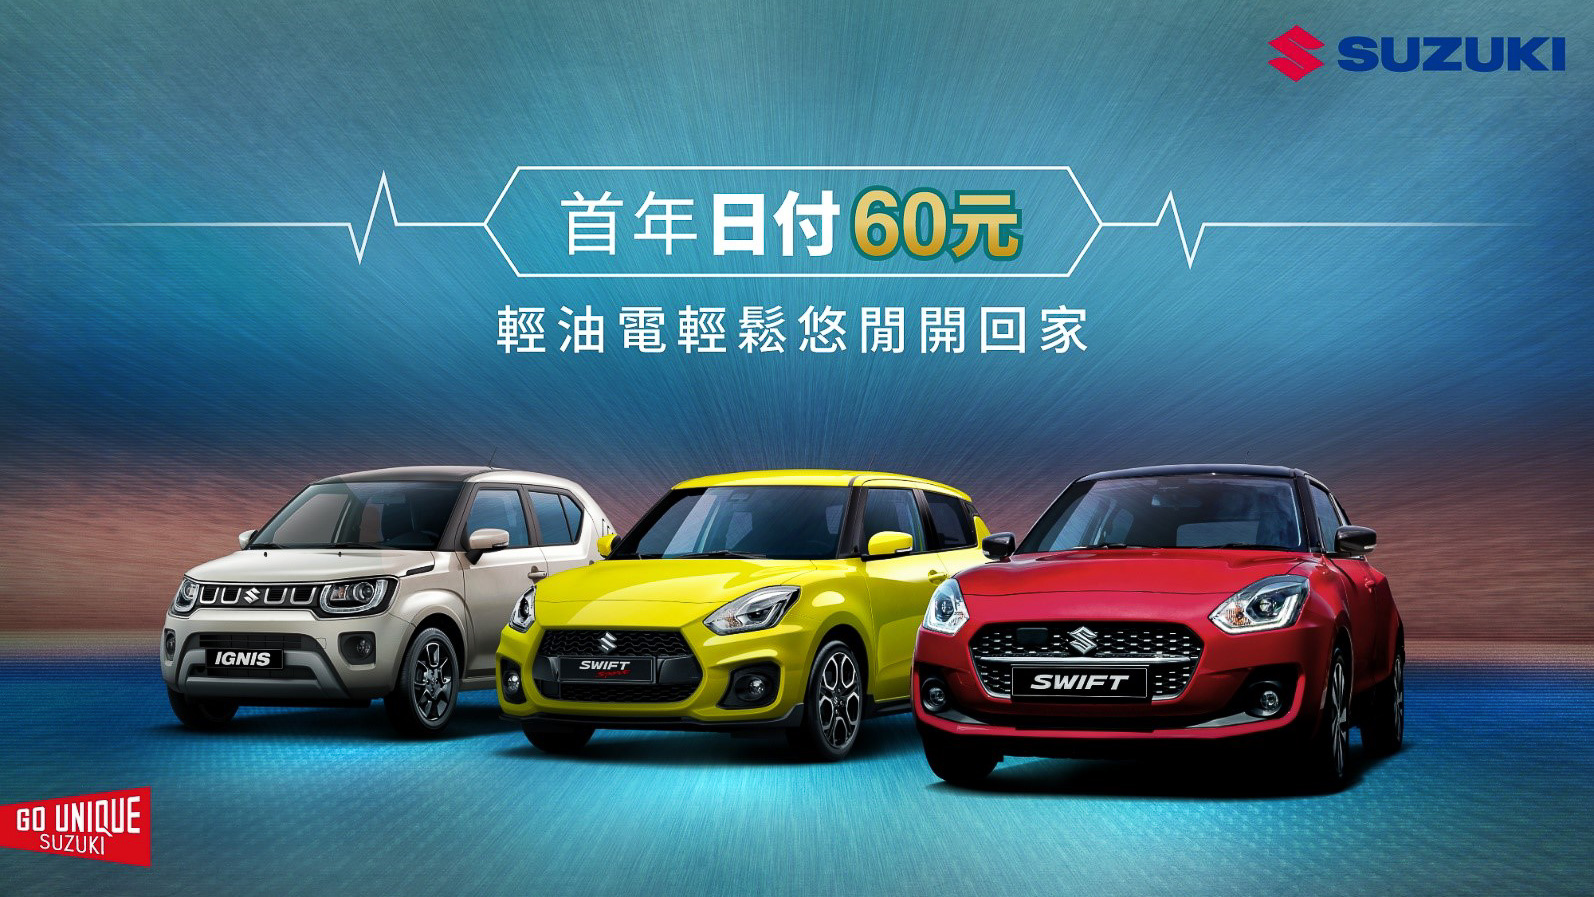 Suzuki 推「日付 60」優購專案